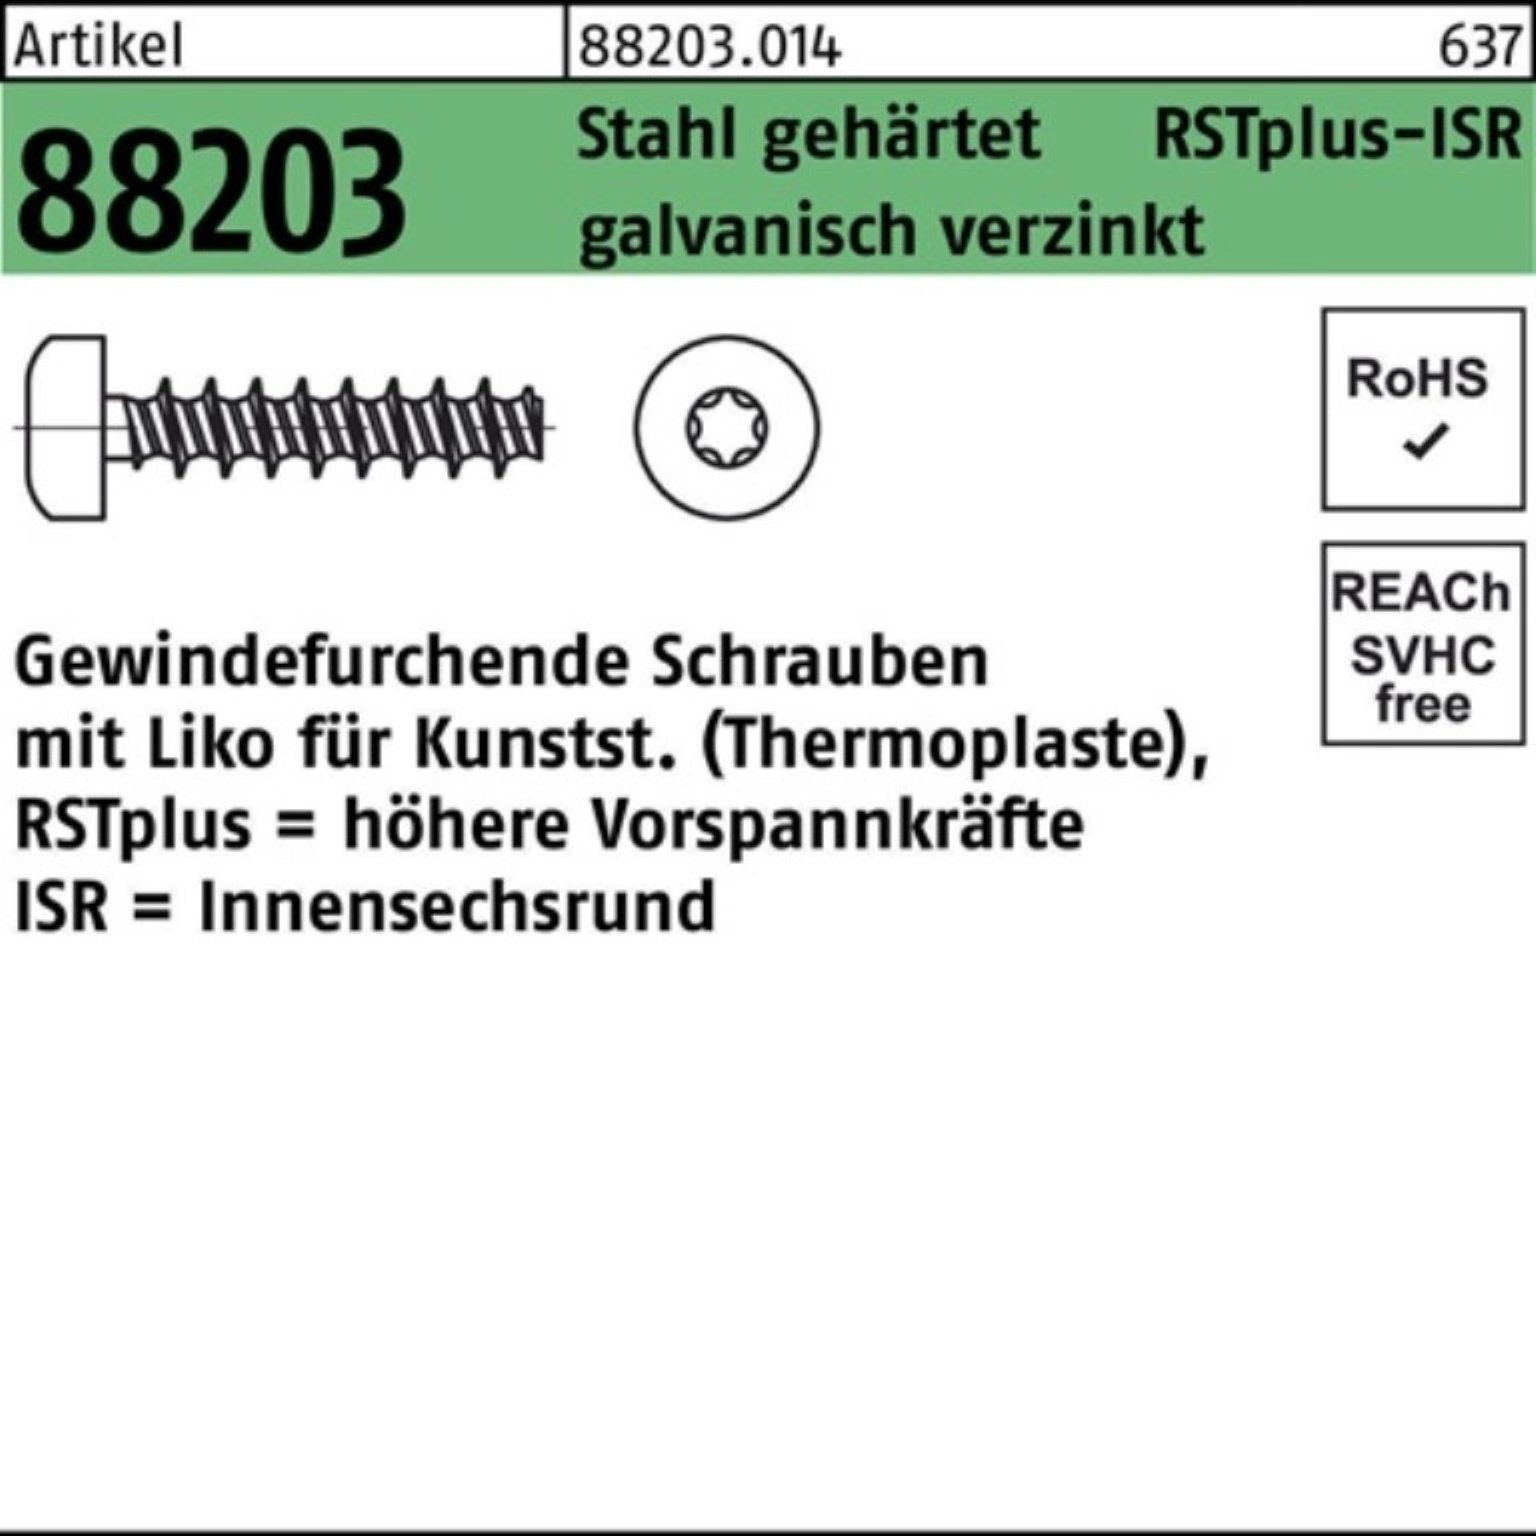 1000er g Pack Gewindeschraube Liko Stahl ISR R Reyher Gewindefurchendeschraube 2,2x6-T6 88203